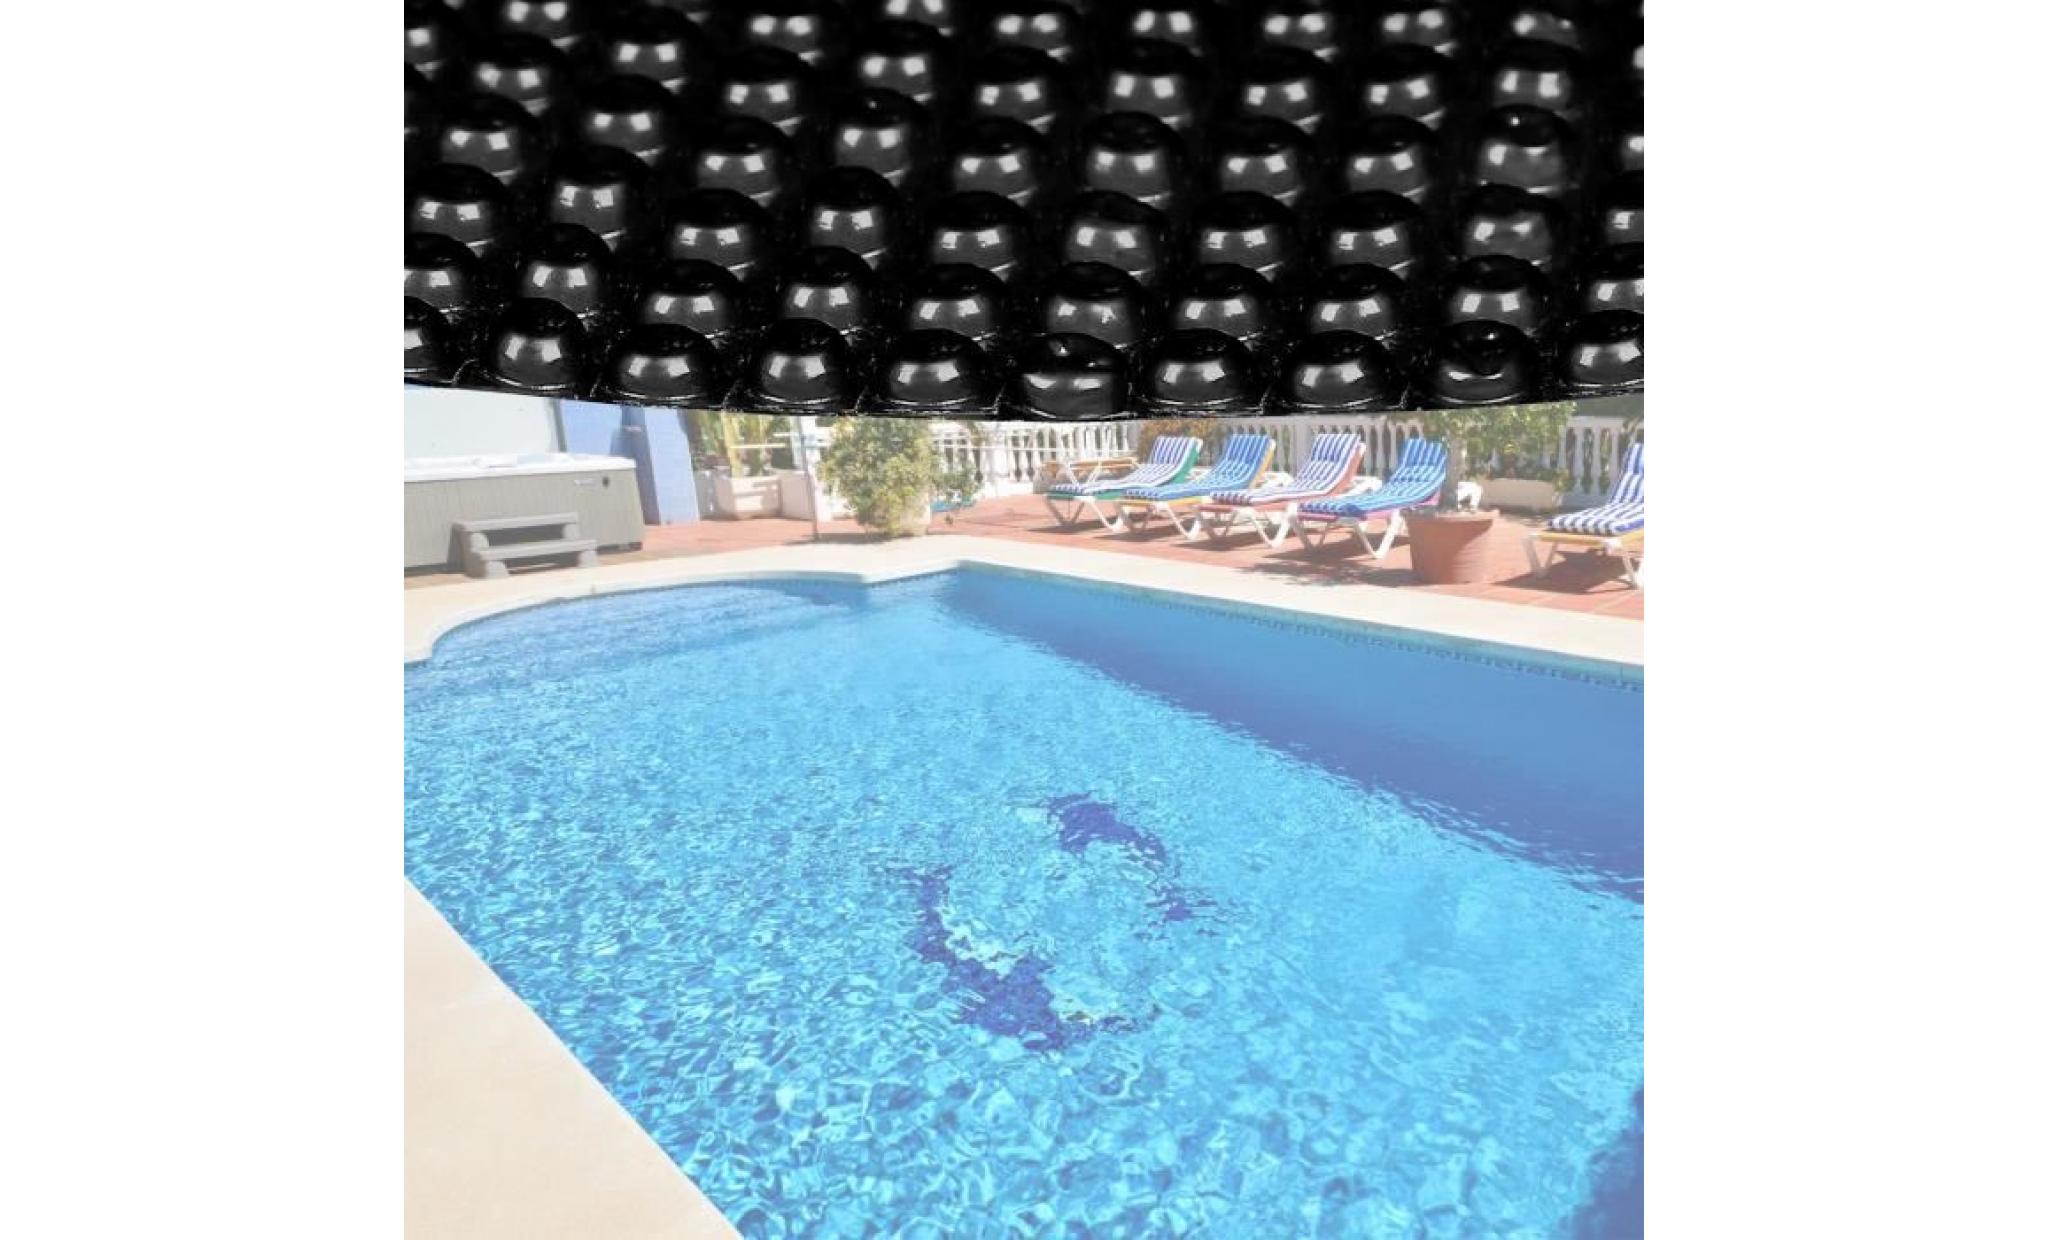 bâche solaire à bulles pour piscine ronde Ø 3.6m noire protection couverture chauffage de piscine   60245